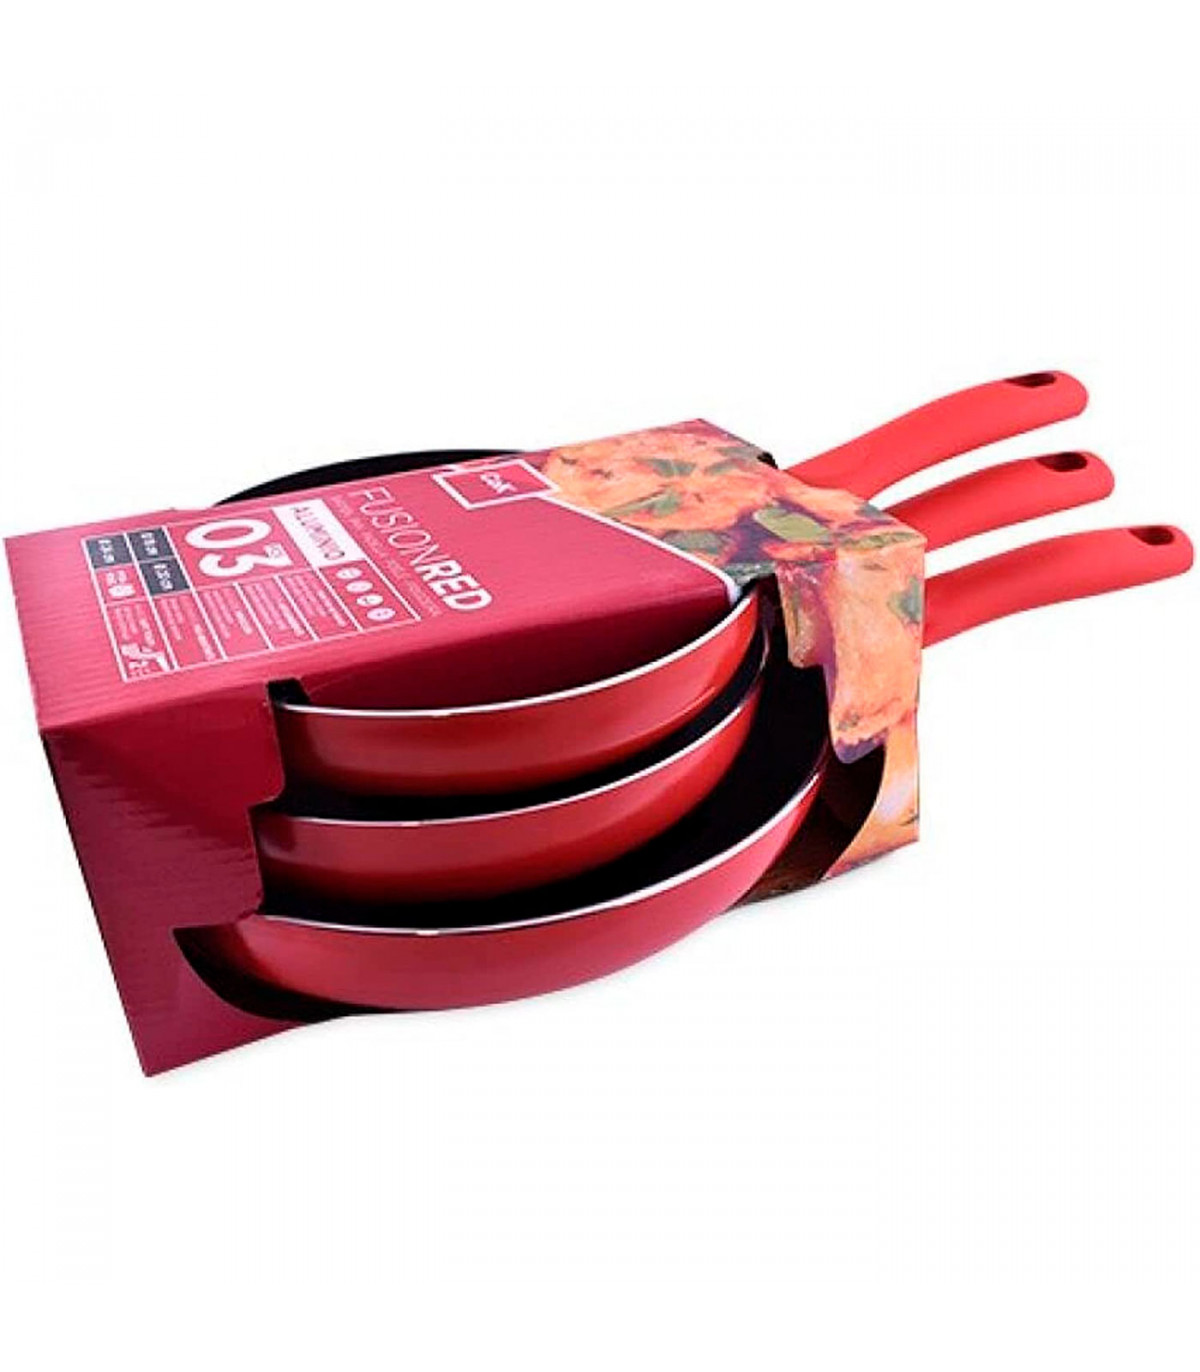 Set de sartenes antiadherentes Tramontina™ color rojo